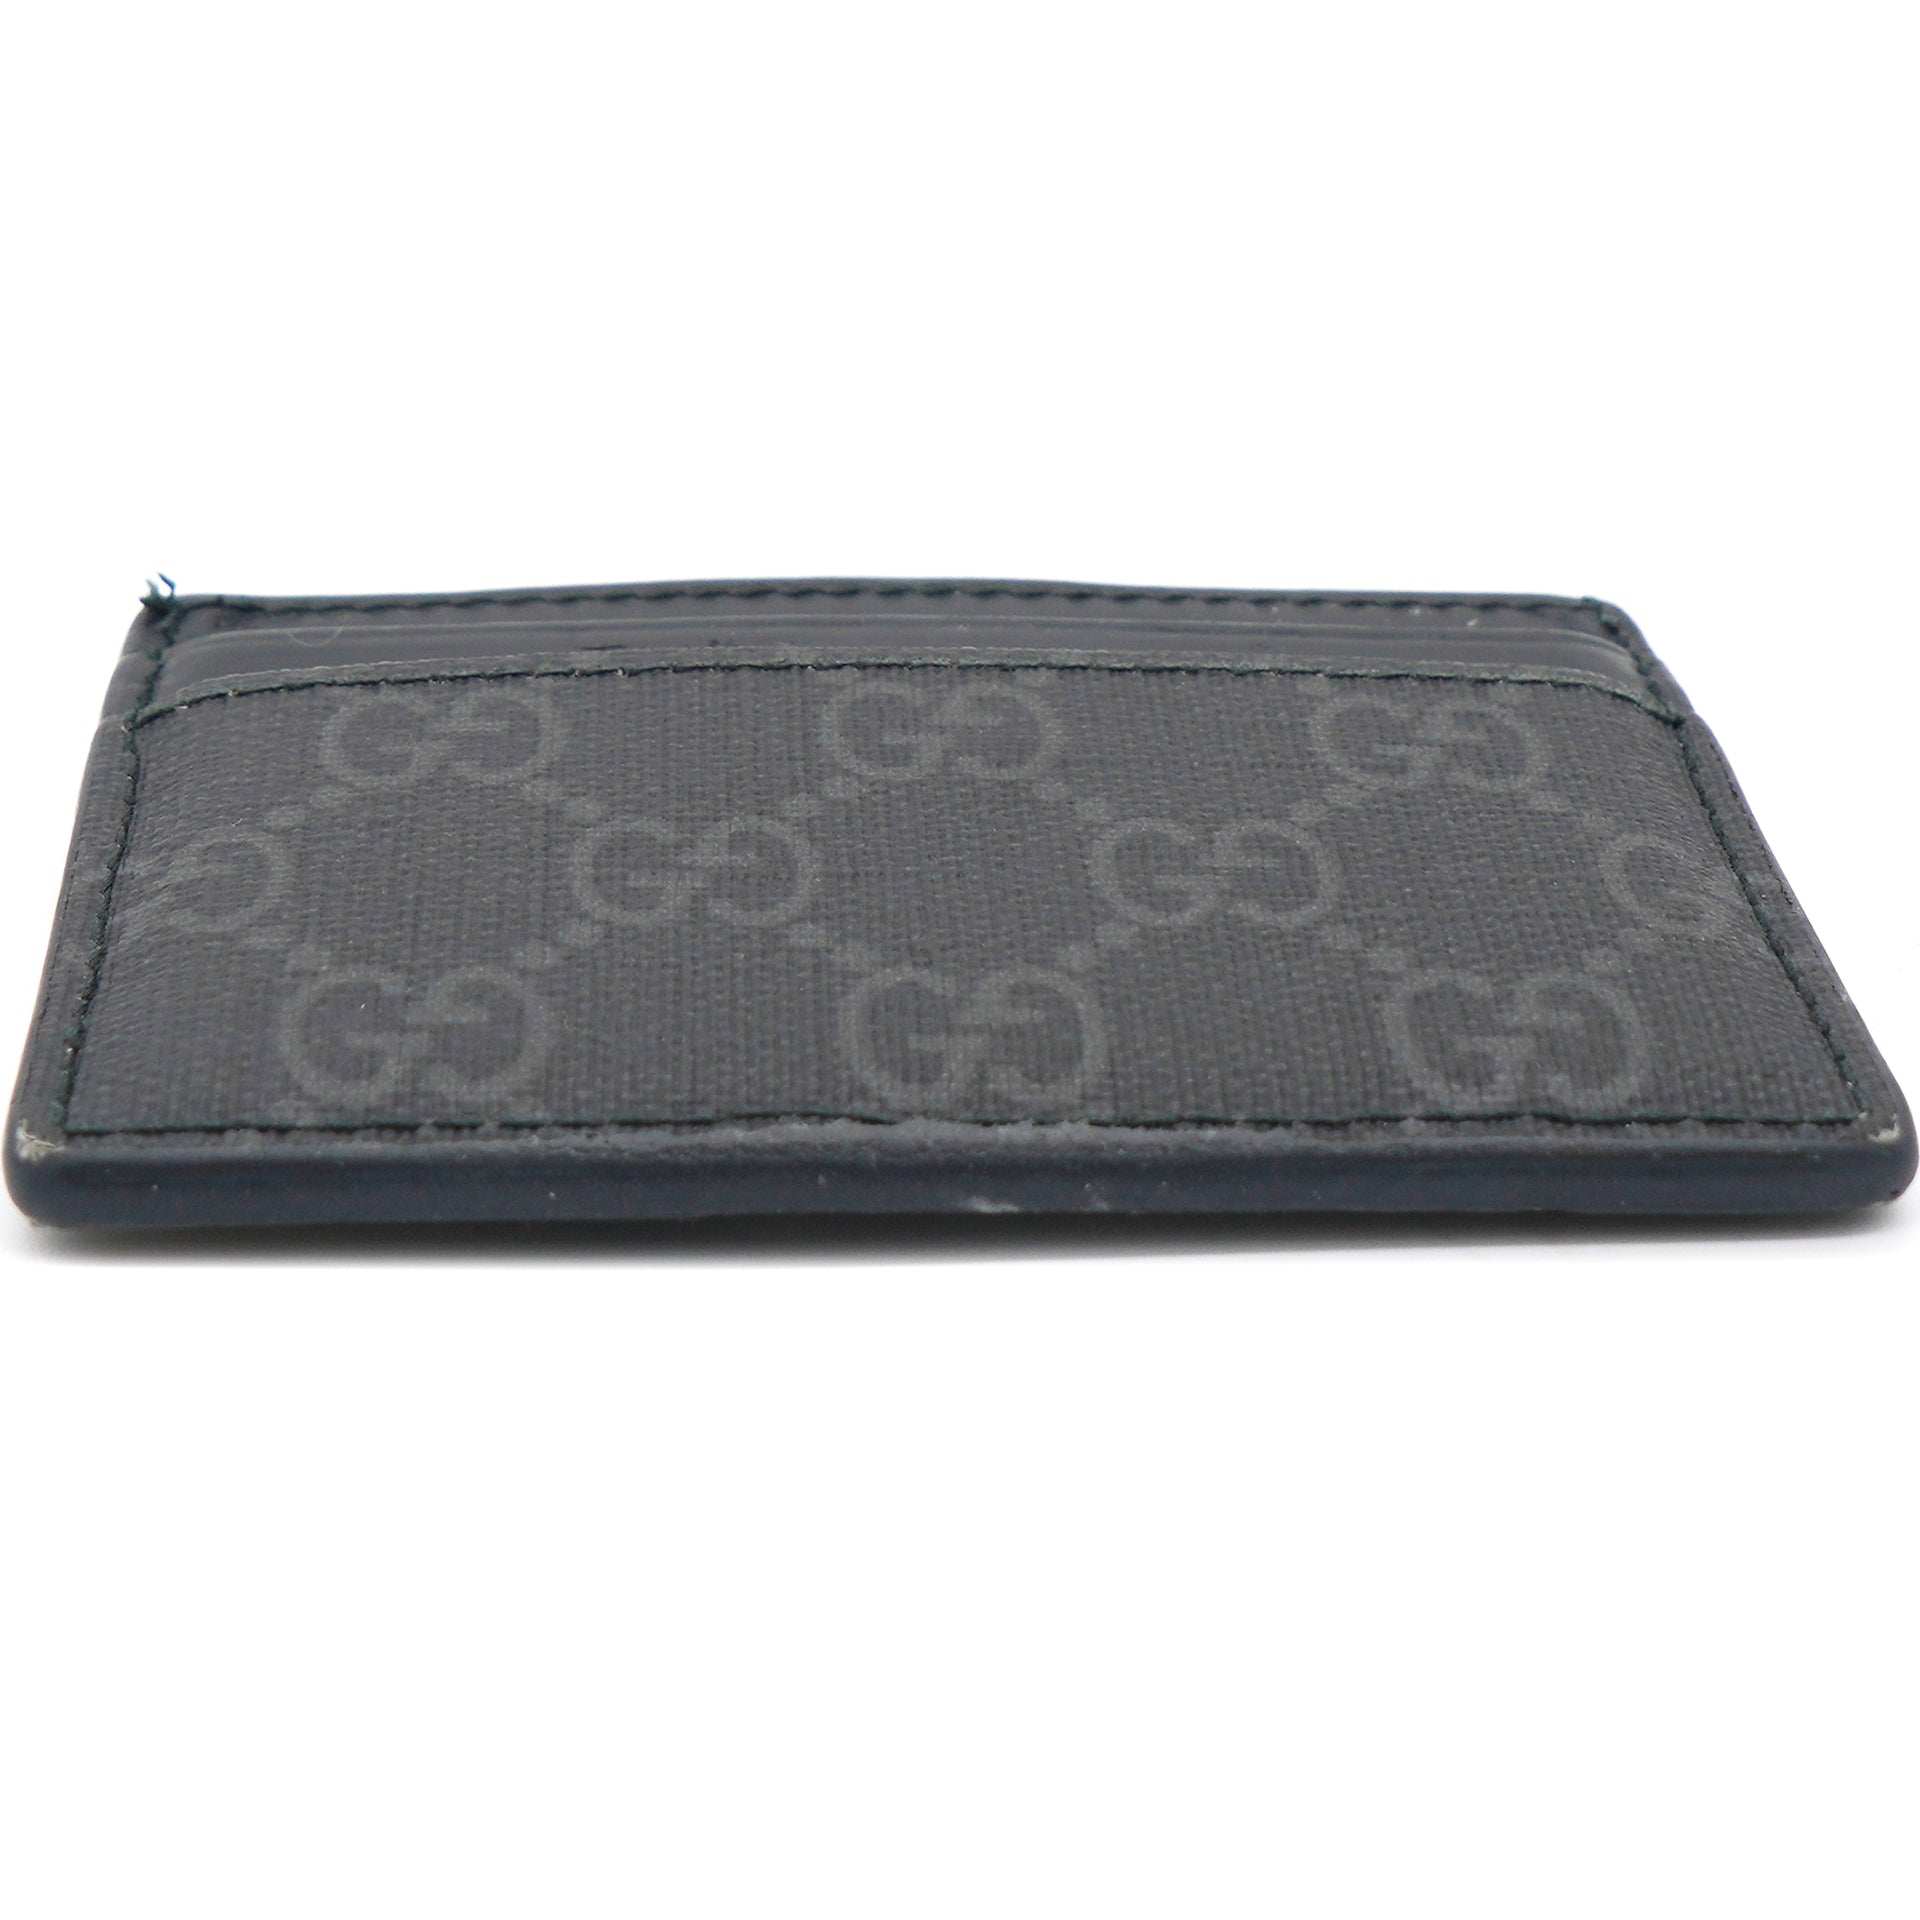 Gucci - Black Kingsnake GG Supreme Leather Card Holder - Men'S -  Leather/Canvas for Men